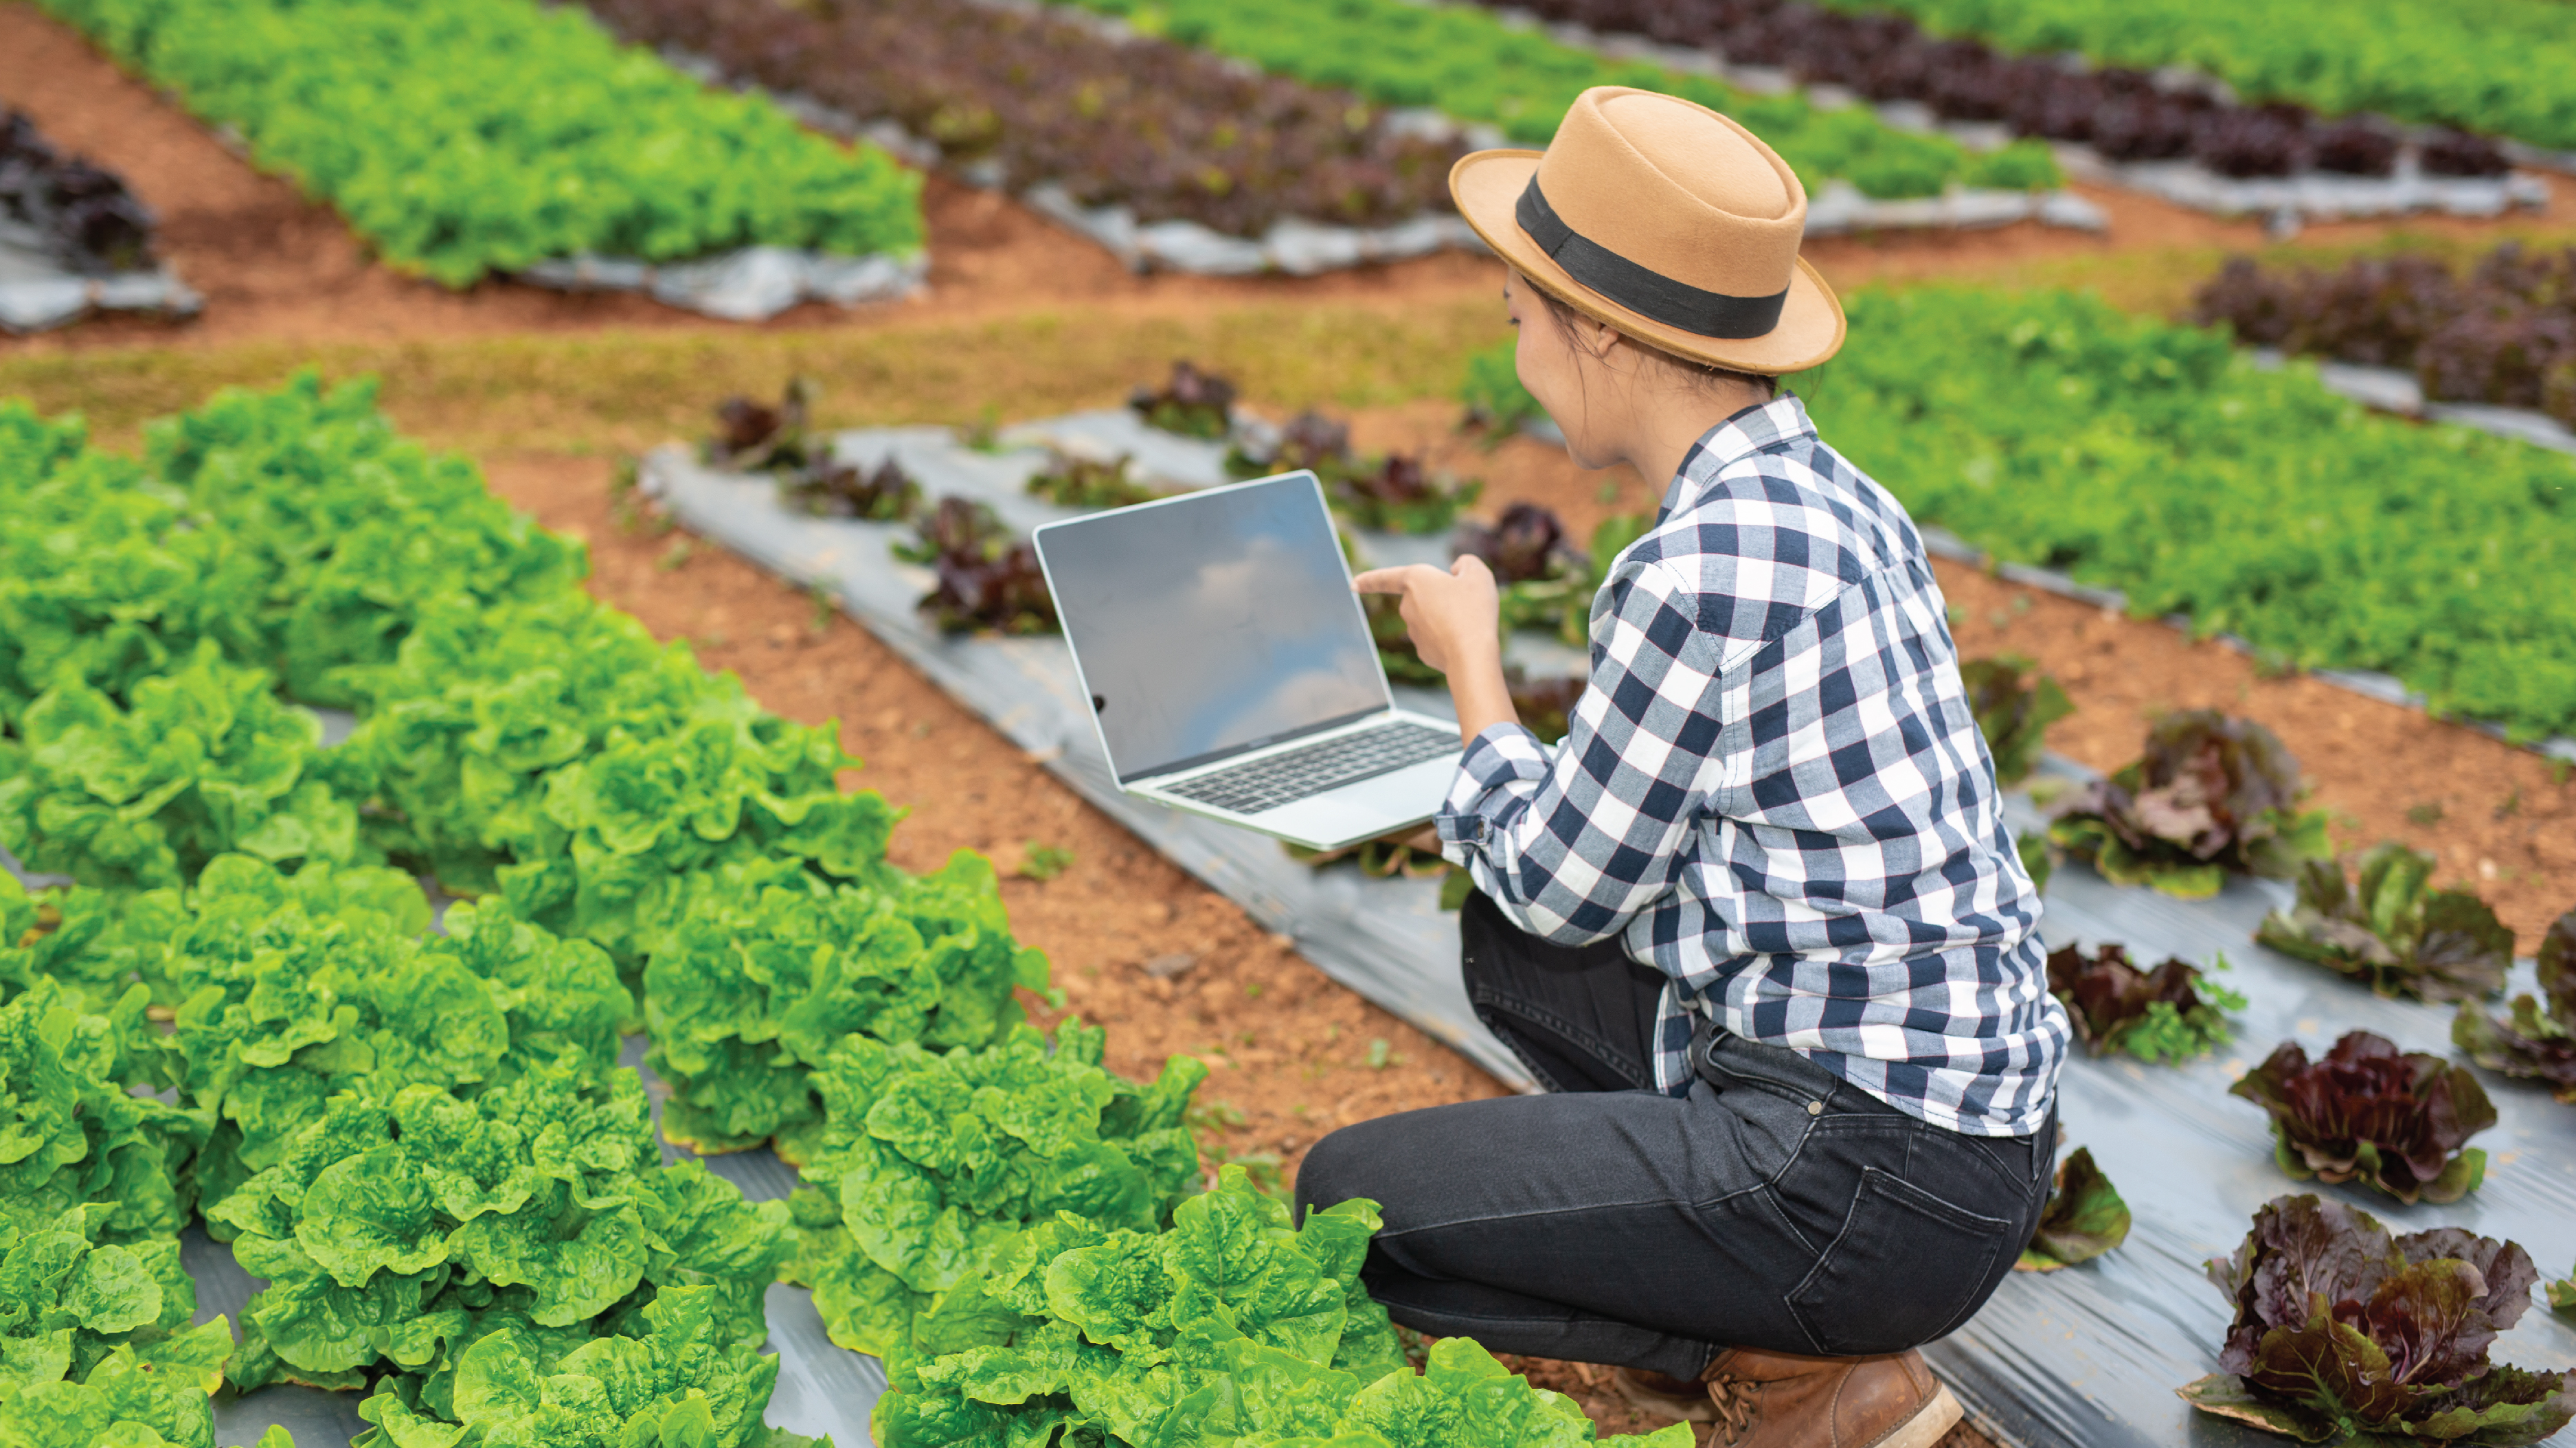 Vì sao chợ nông sản online trở thành xu hướng tiêu dùng thập niên 2020?